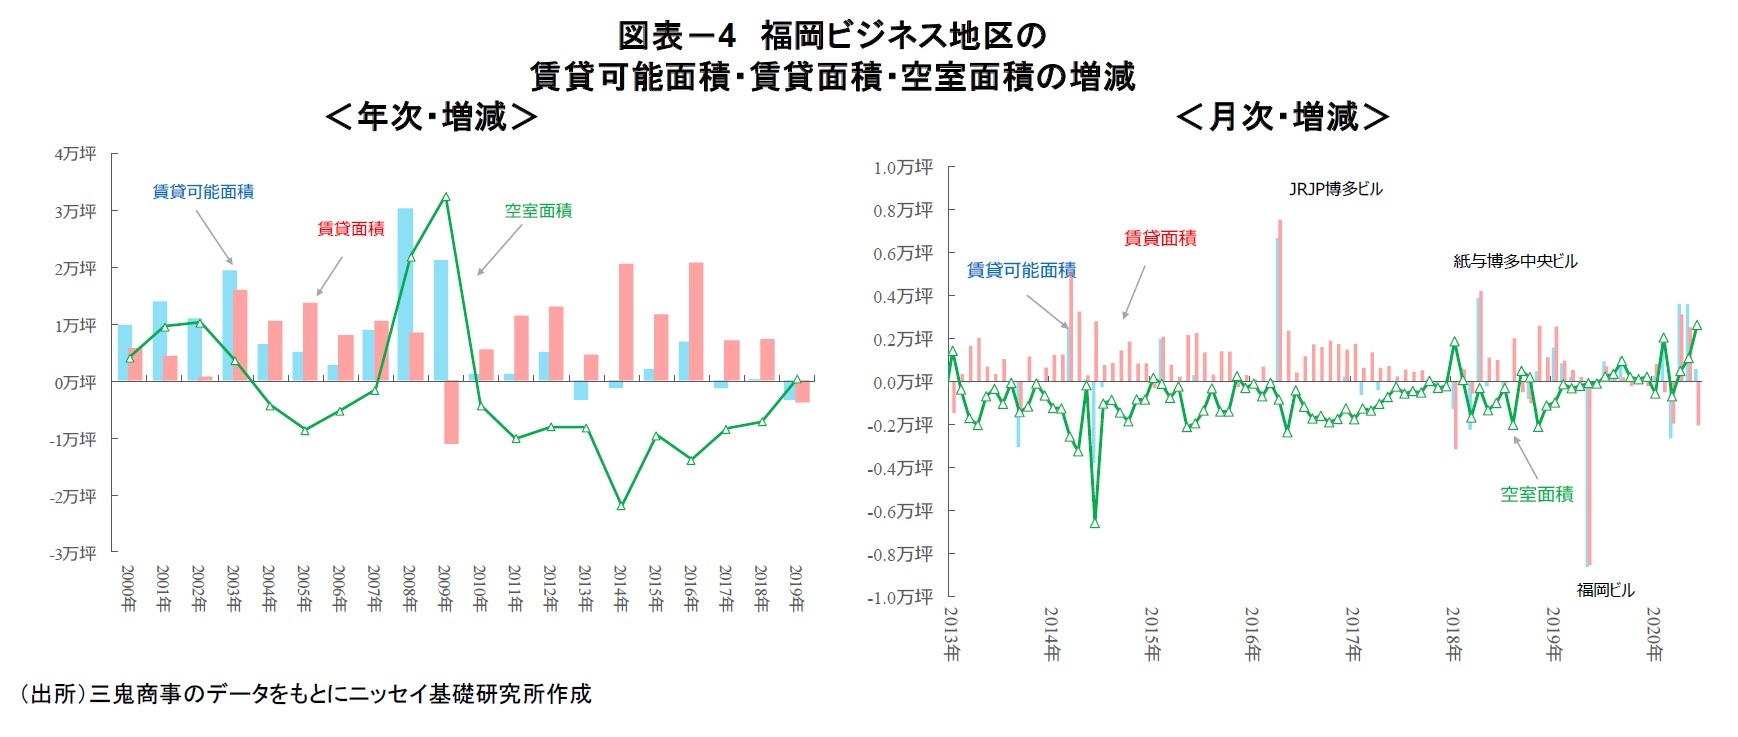 図表－4 福岡ビジネス地区の賃貸可能面積・賃貸面積・空室面積の増減